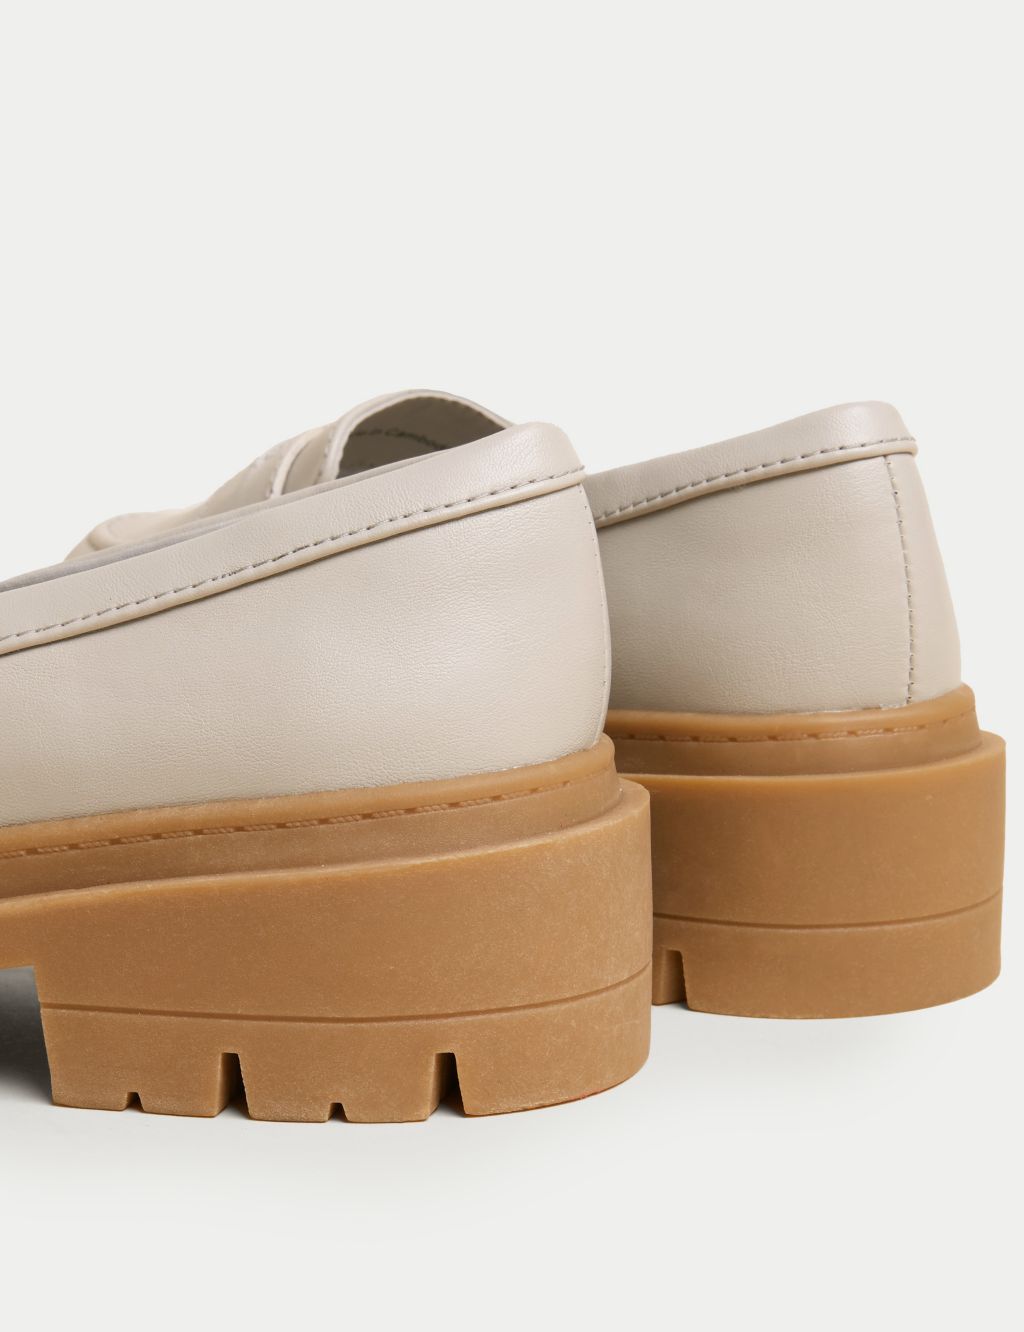 Wide Fit Slip On Flatform Loafers image 2